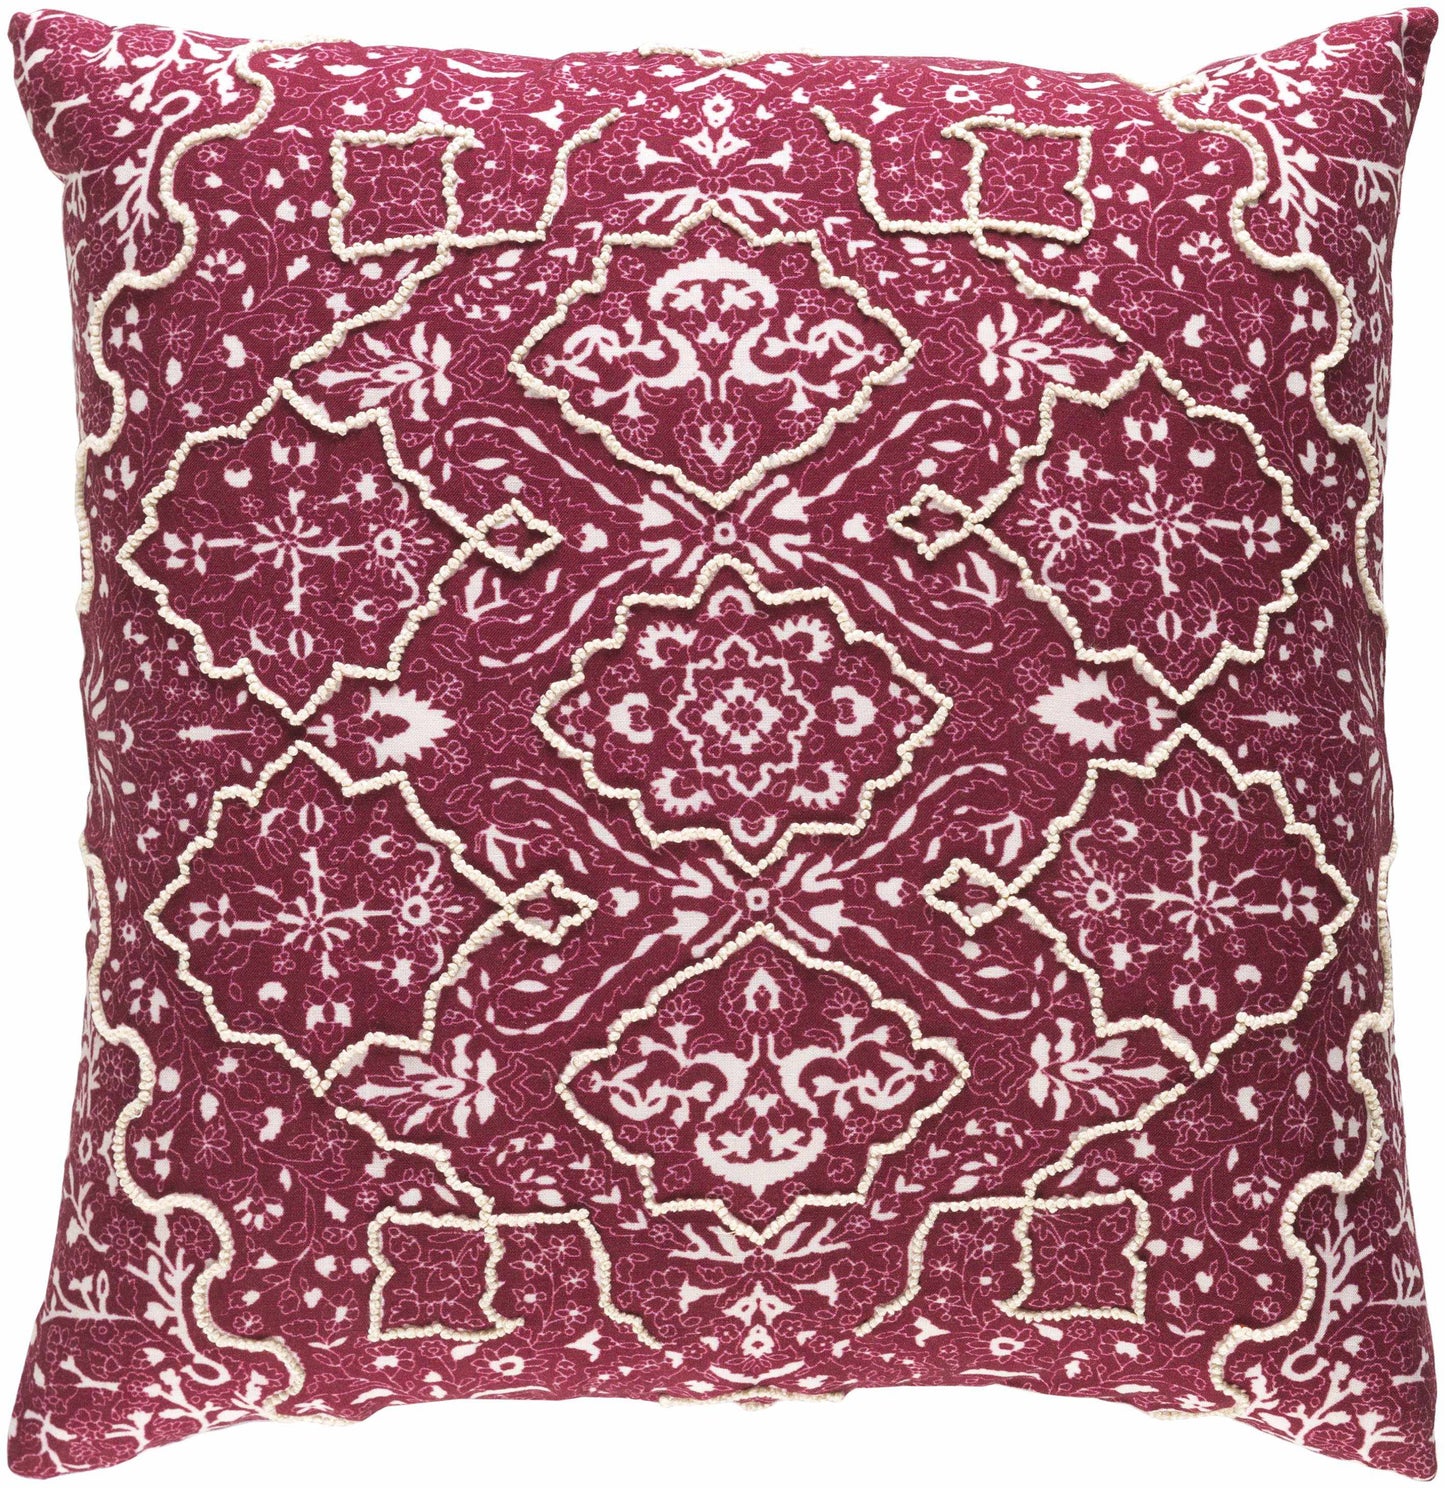 Schoten Burgundy Pillow Cover